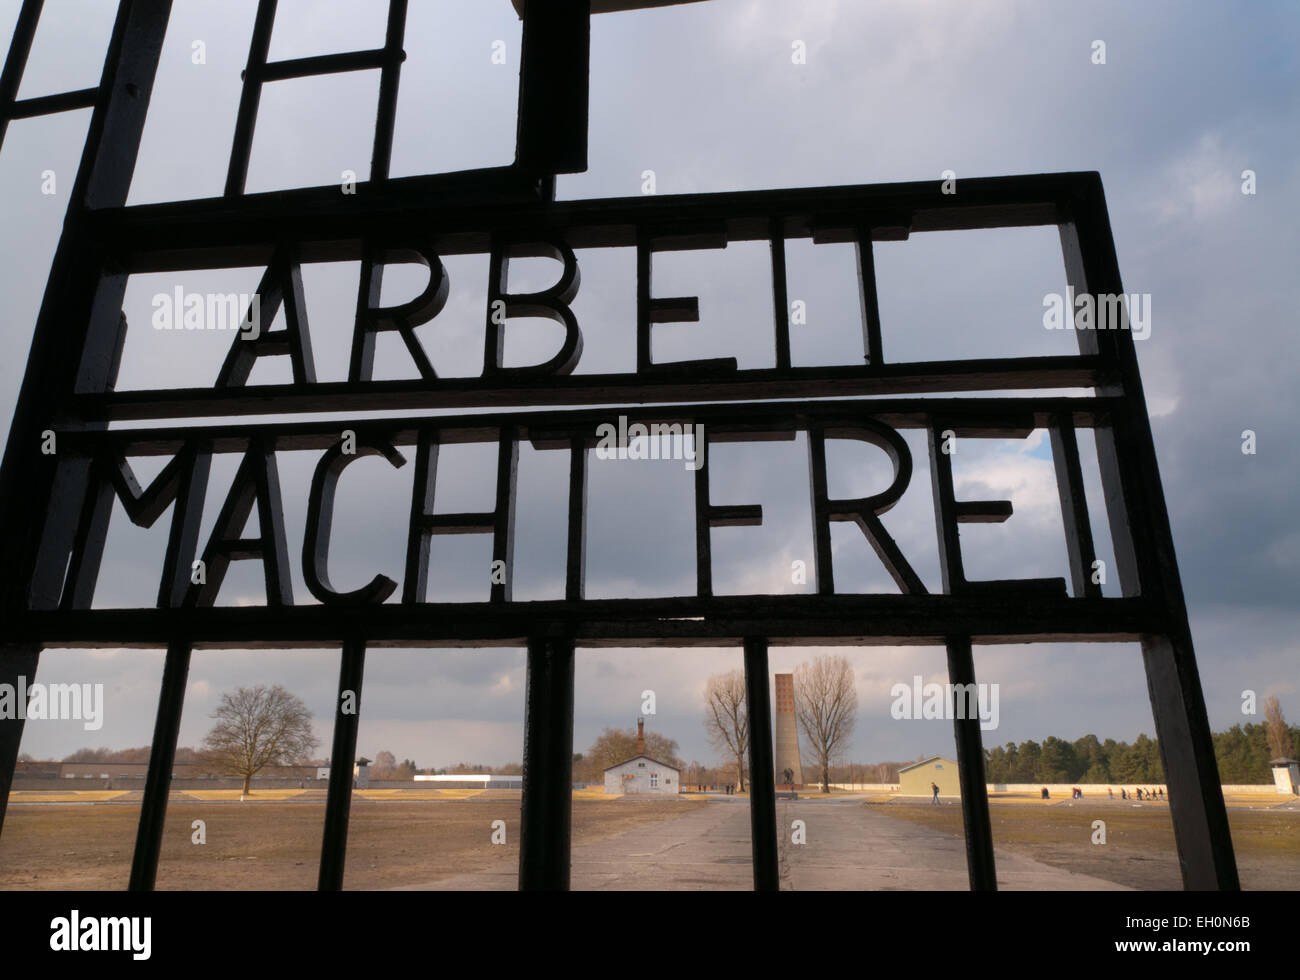 Arbeit macht frei signo en el campo de concentración de Sachsenhausen monumento, Oranienburg, Alemania Foto de stock